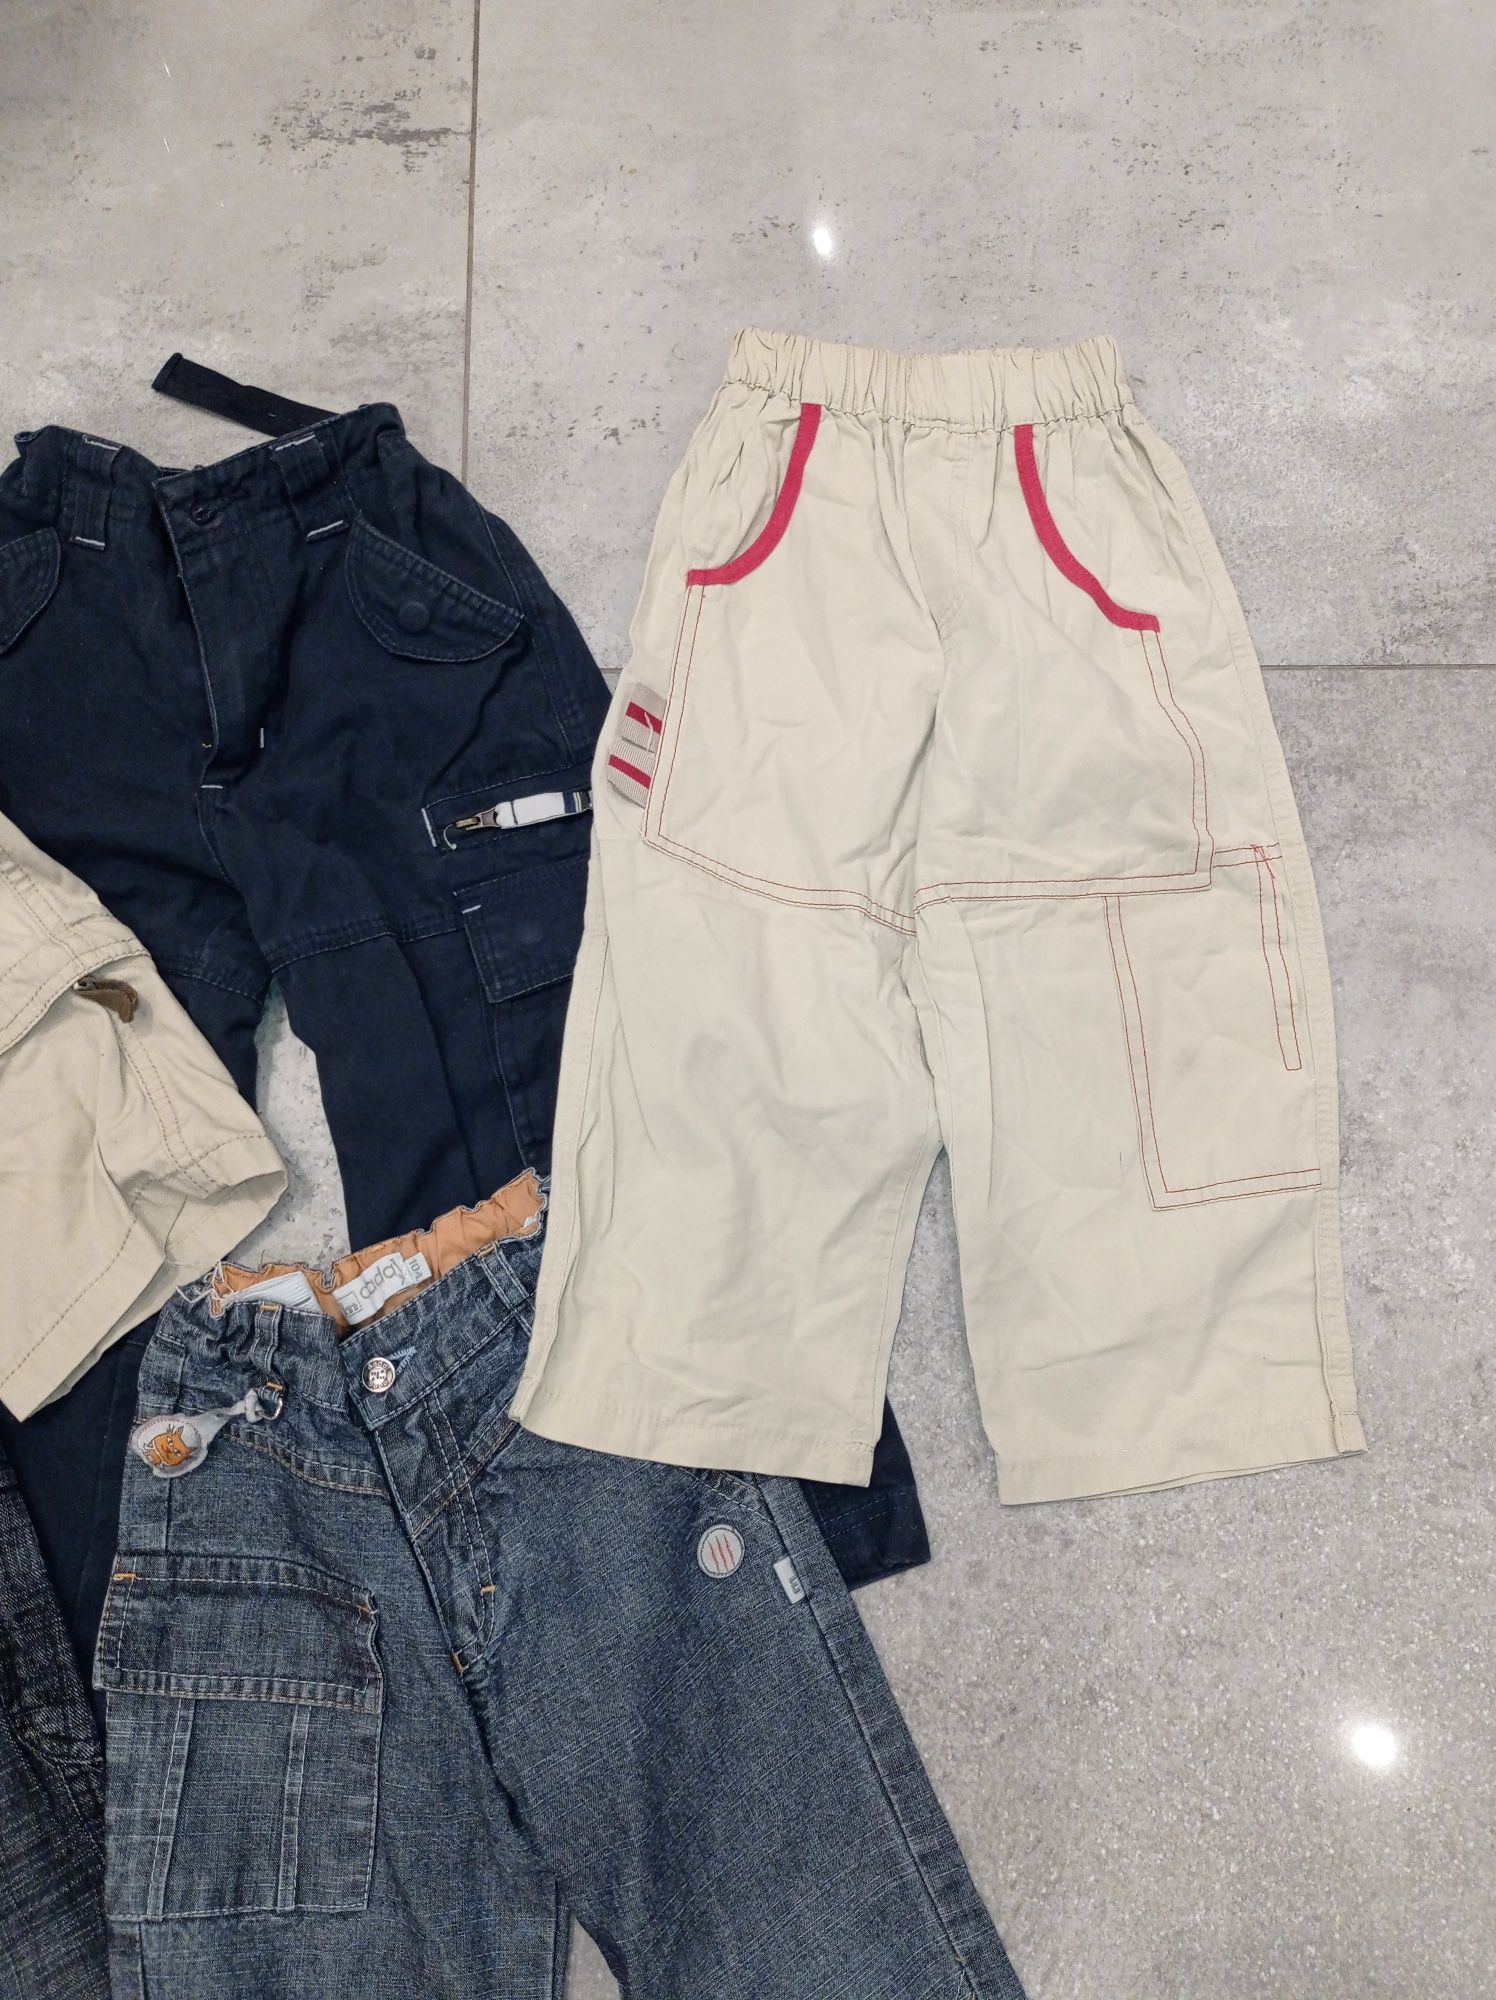 Zestaw 6 par  spodni dla chłopca 92/98/104 bojówki jeans b.dobry stan